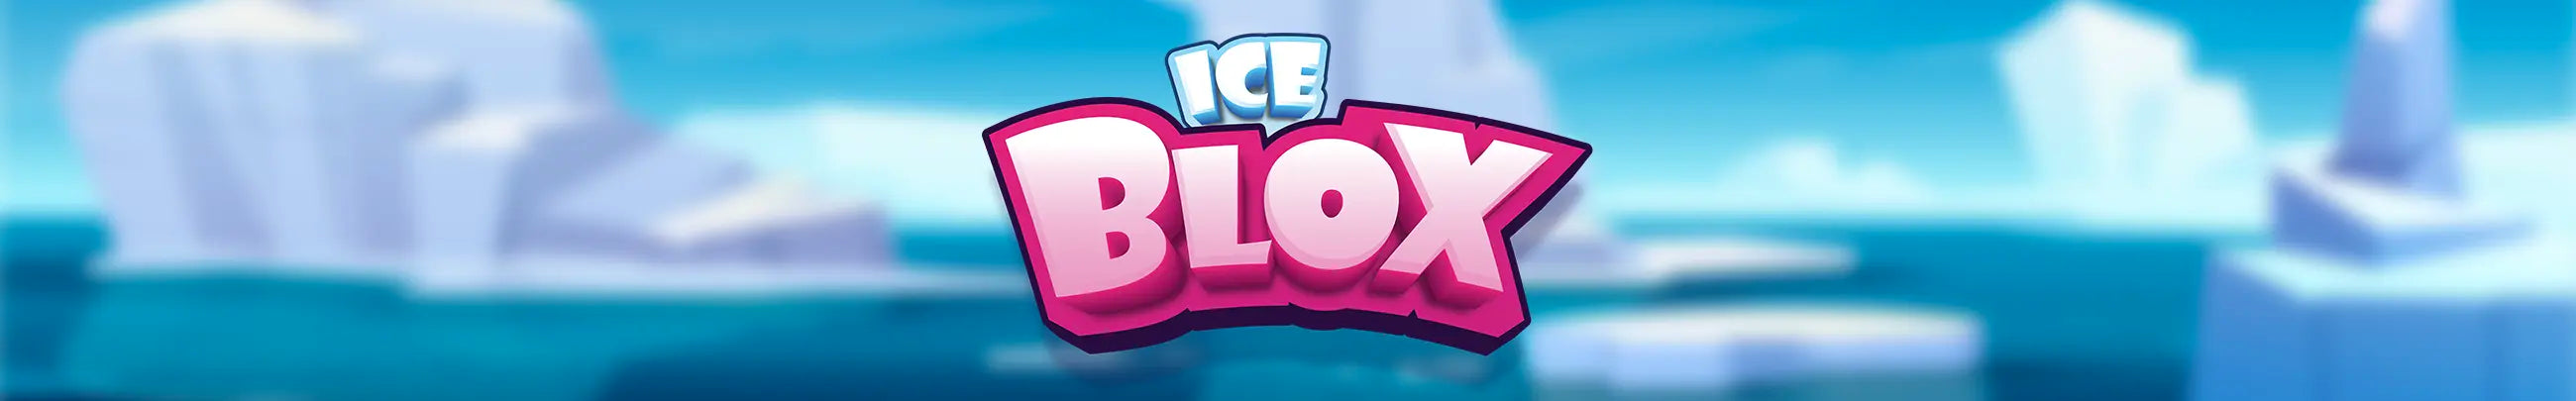 ICE BLOX